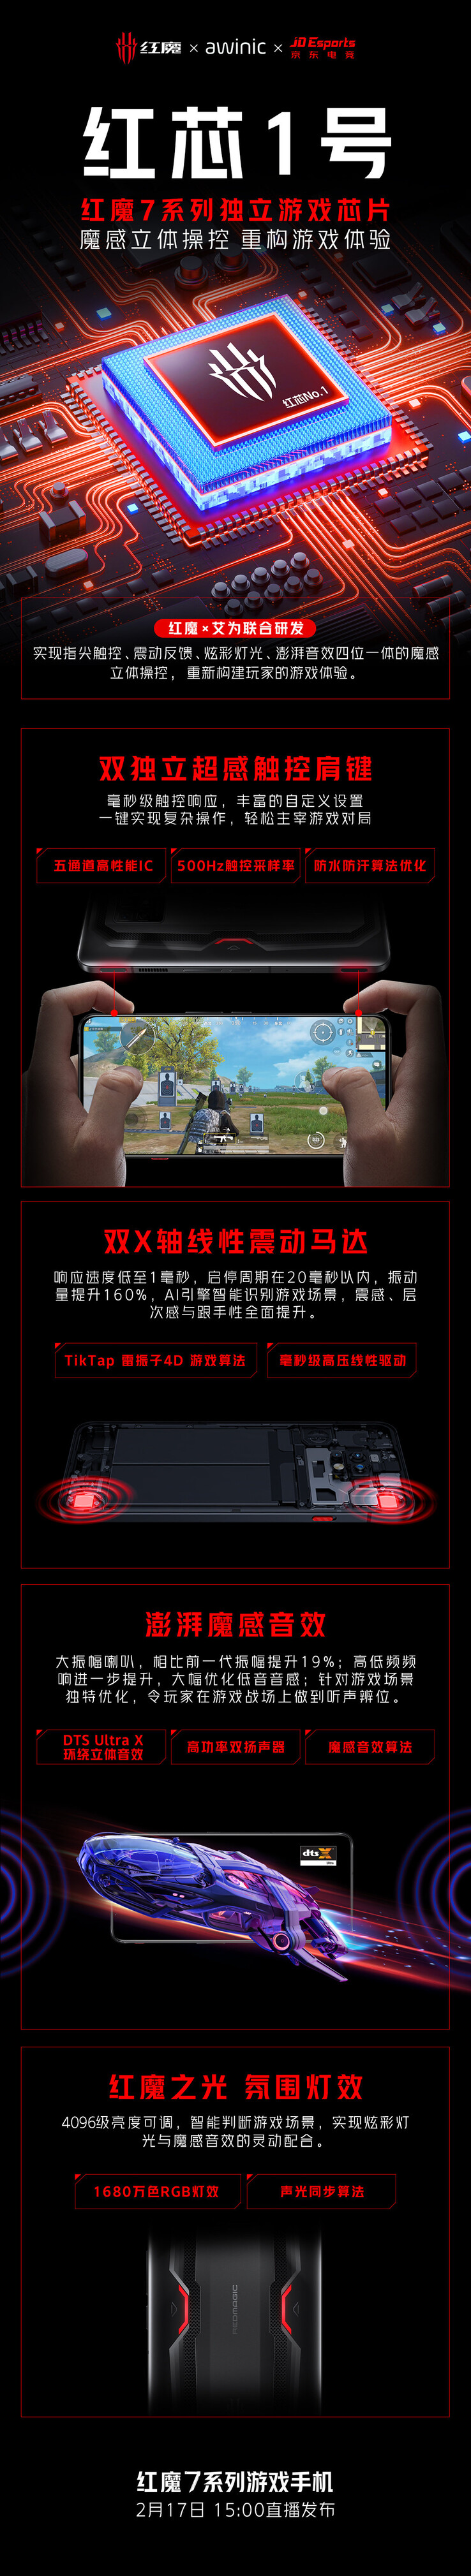 El Red Core 1 se anuncia como parte de la serie RedMagic 7 en su lanzamiento. (Fuente: RedMagic vía Weibo)